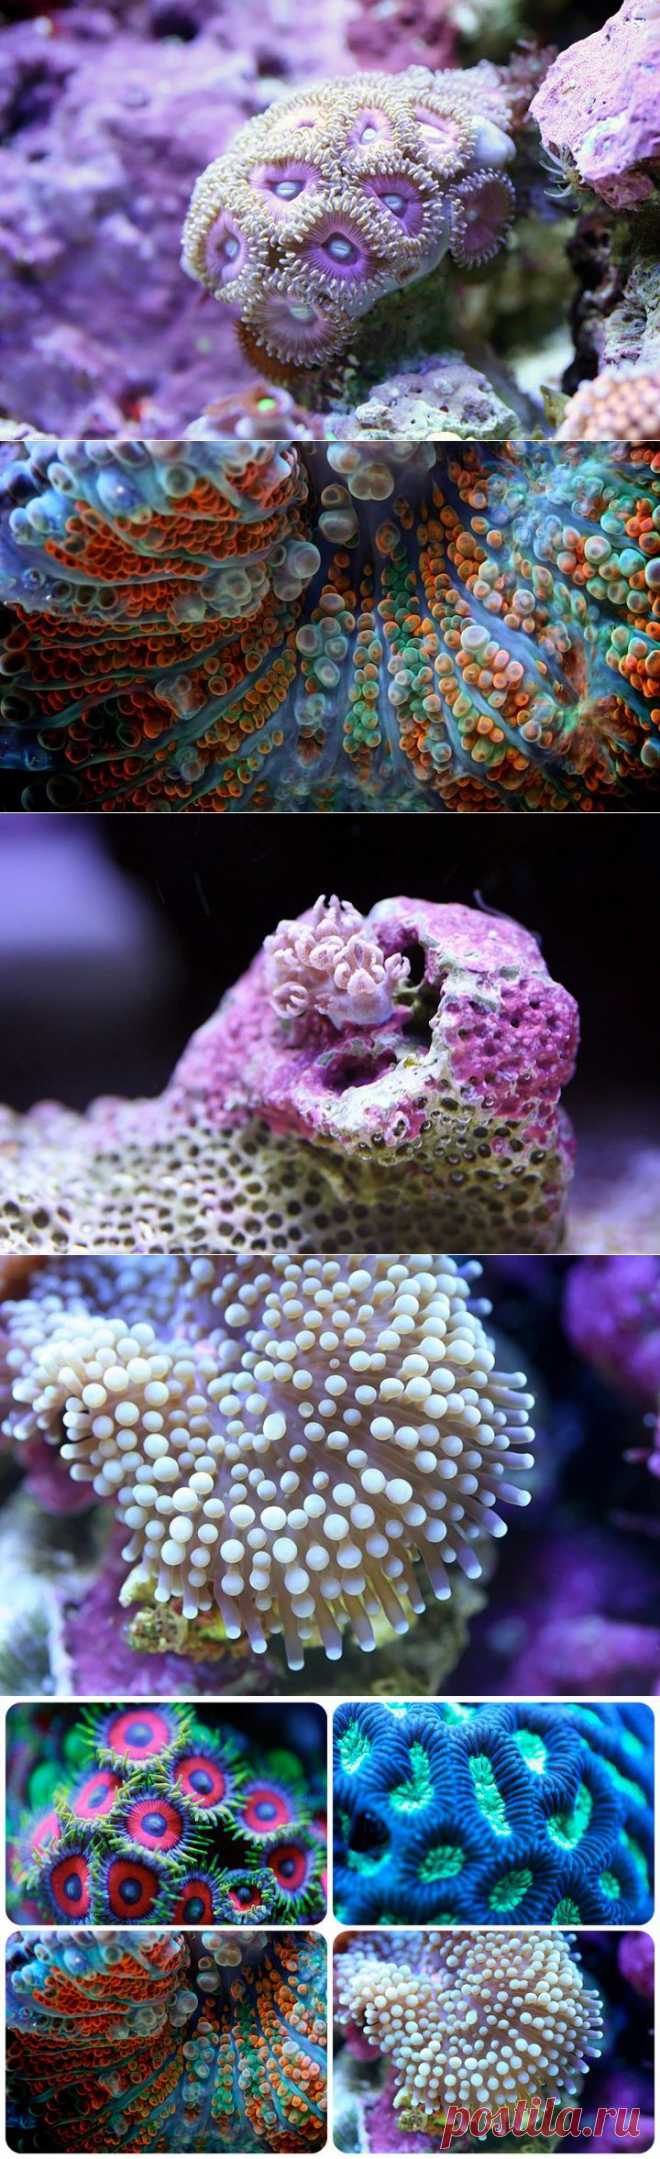 (+1) тема - Макросъемка кораллов | Наука и техника